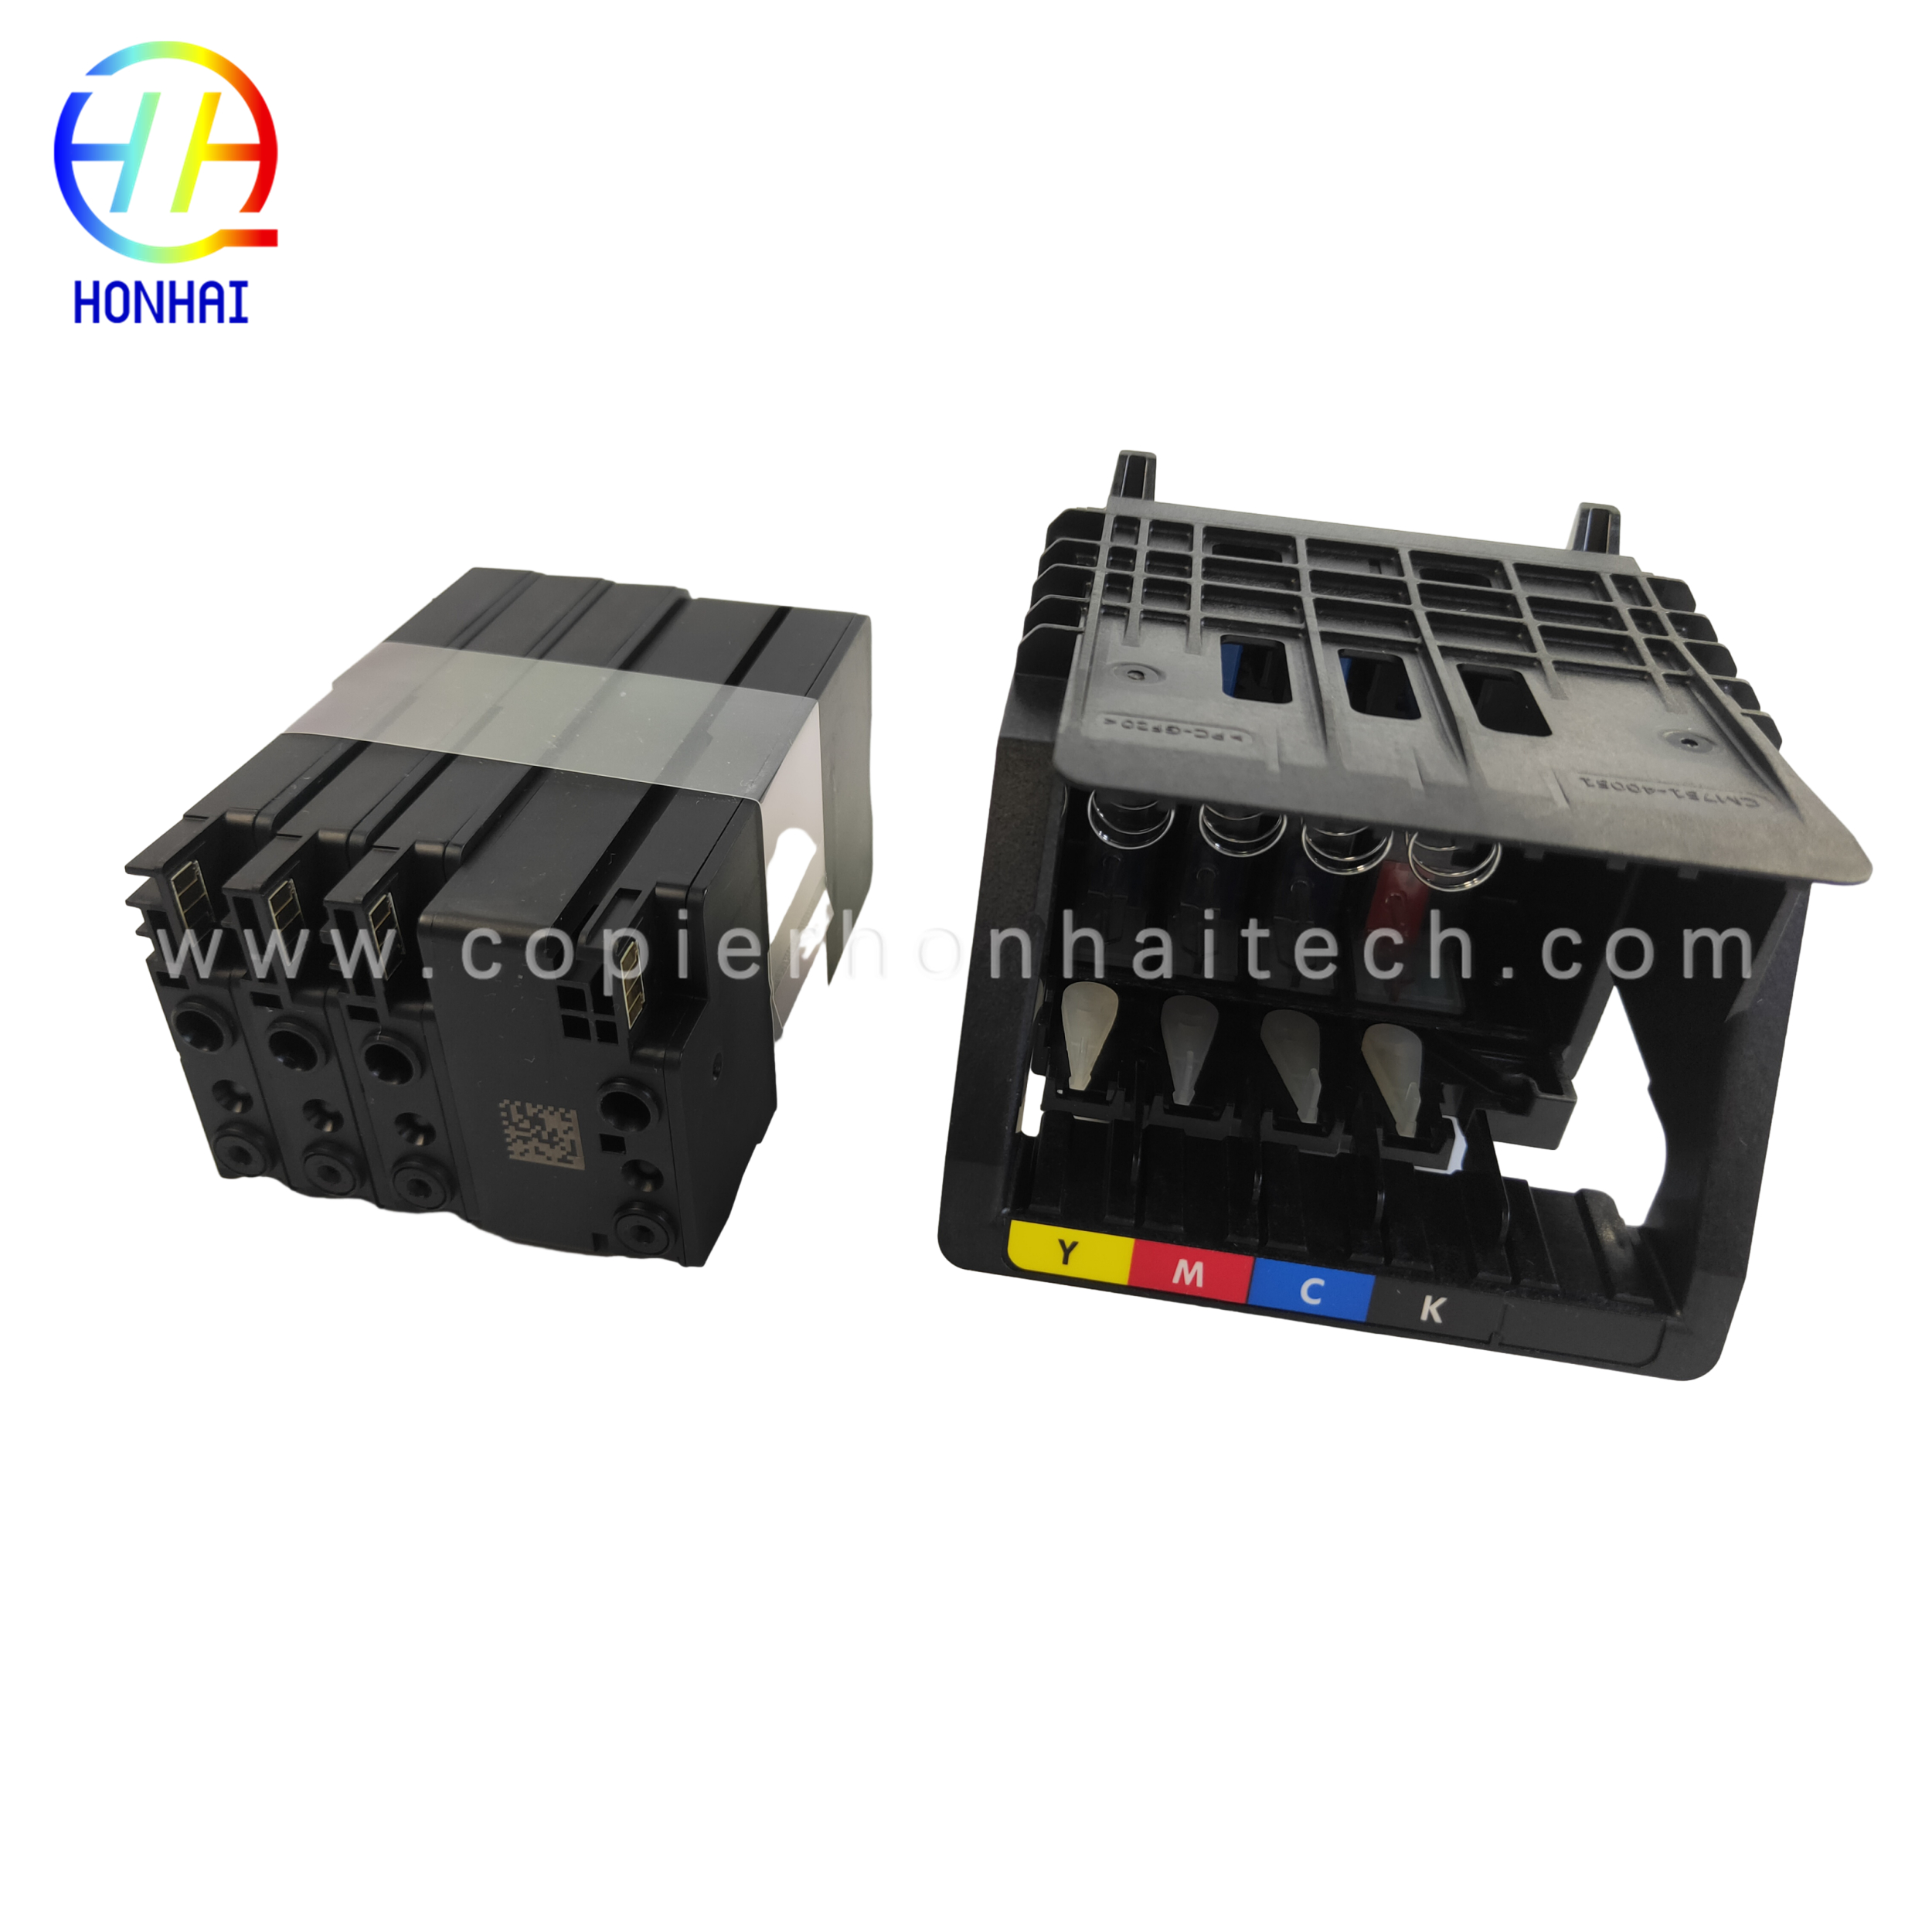 https://www.copierhonhaitech.com/origen-new-designjet-printhead-replacement-kit-3ed58a-for-hp-713-designjet-t650-t630-t230-t210-studio-plotter-printers-black-product/